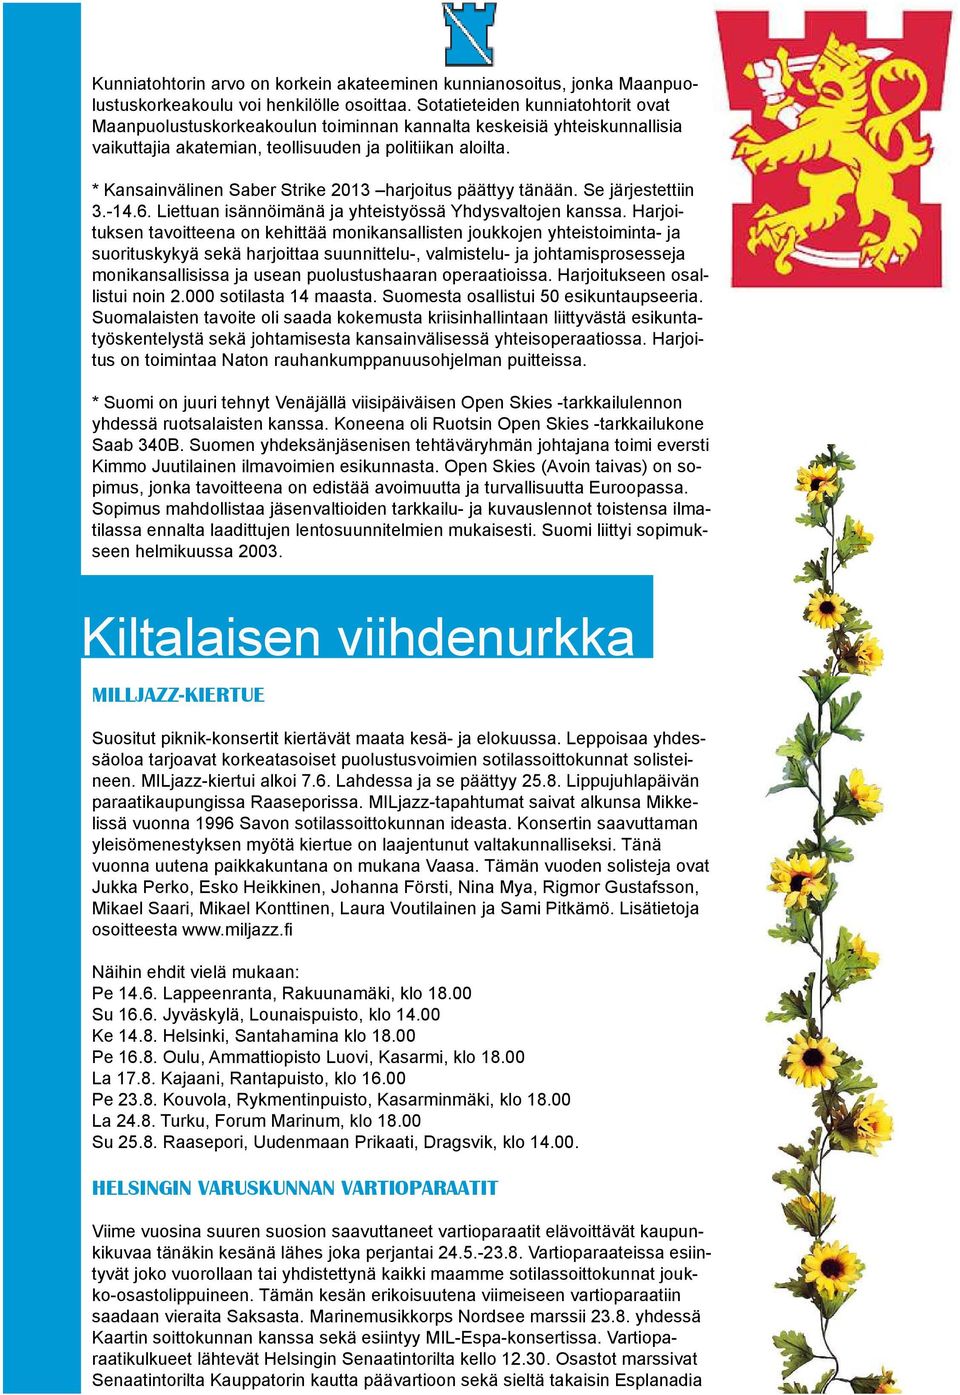 * Kansainvälinen Saber Strike 2013 harjoitus päättyy tänään. Se järjestettiin 3.-14.6. Liettuan isännöimänä ja yhteistyössä Yhdysvaltojen kanssa.